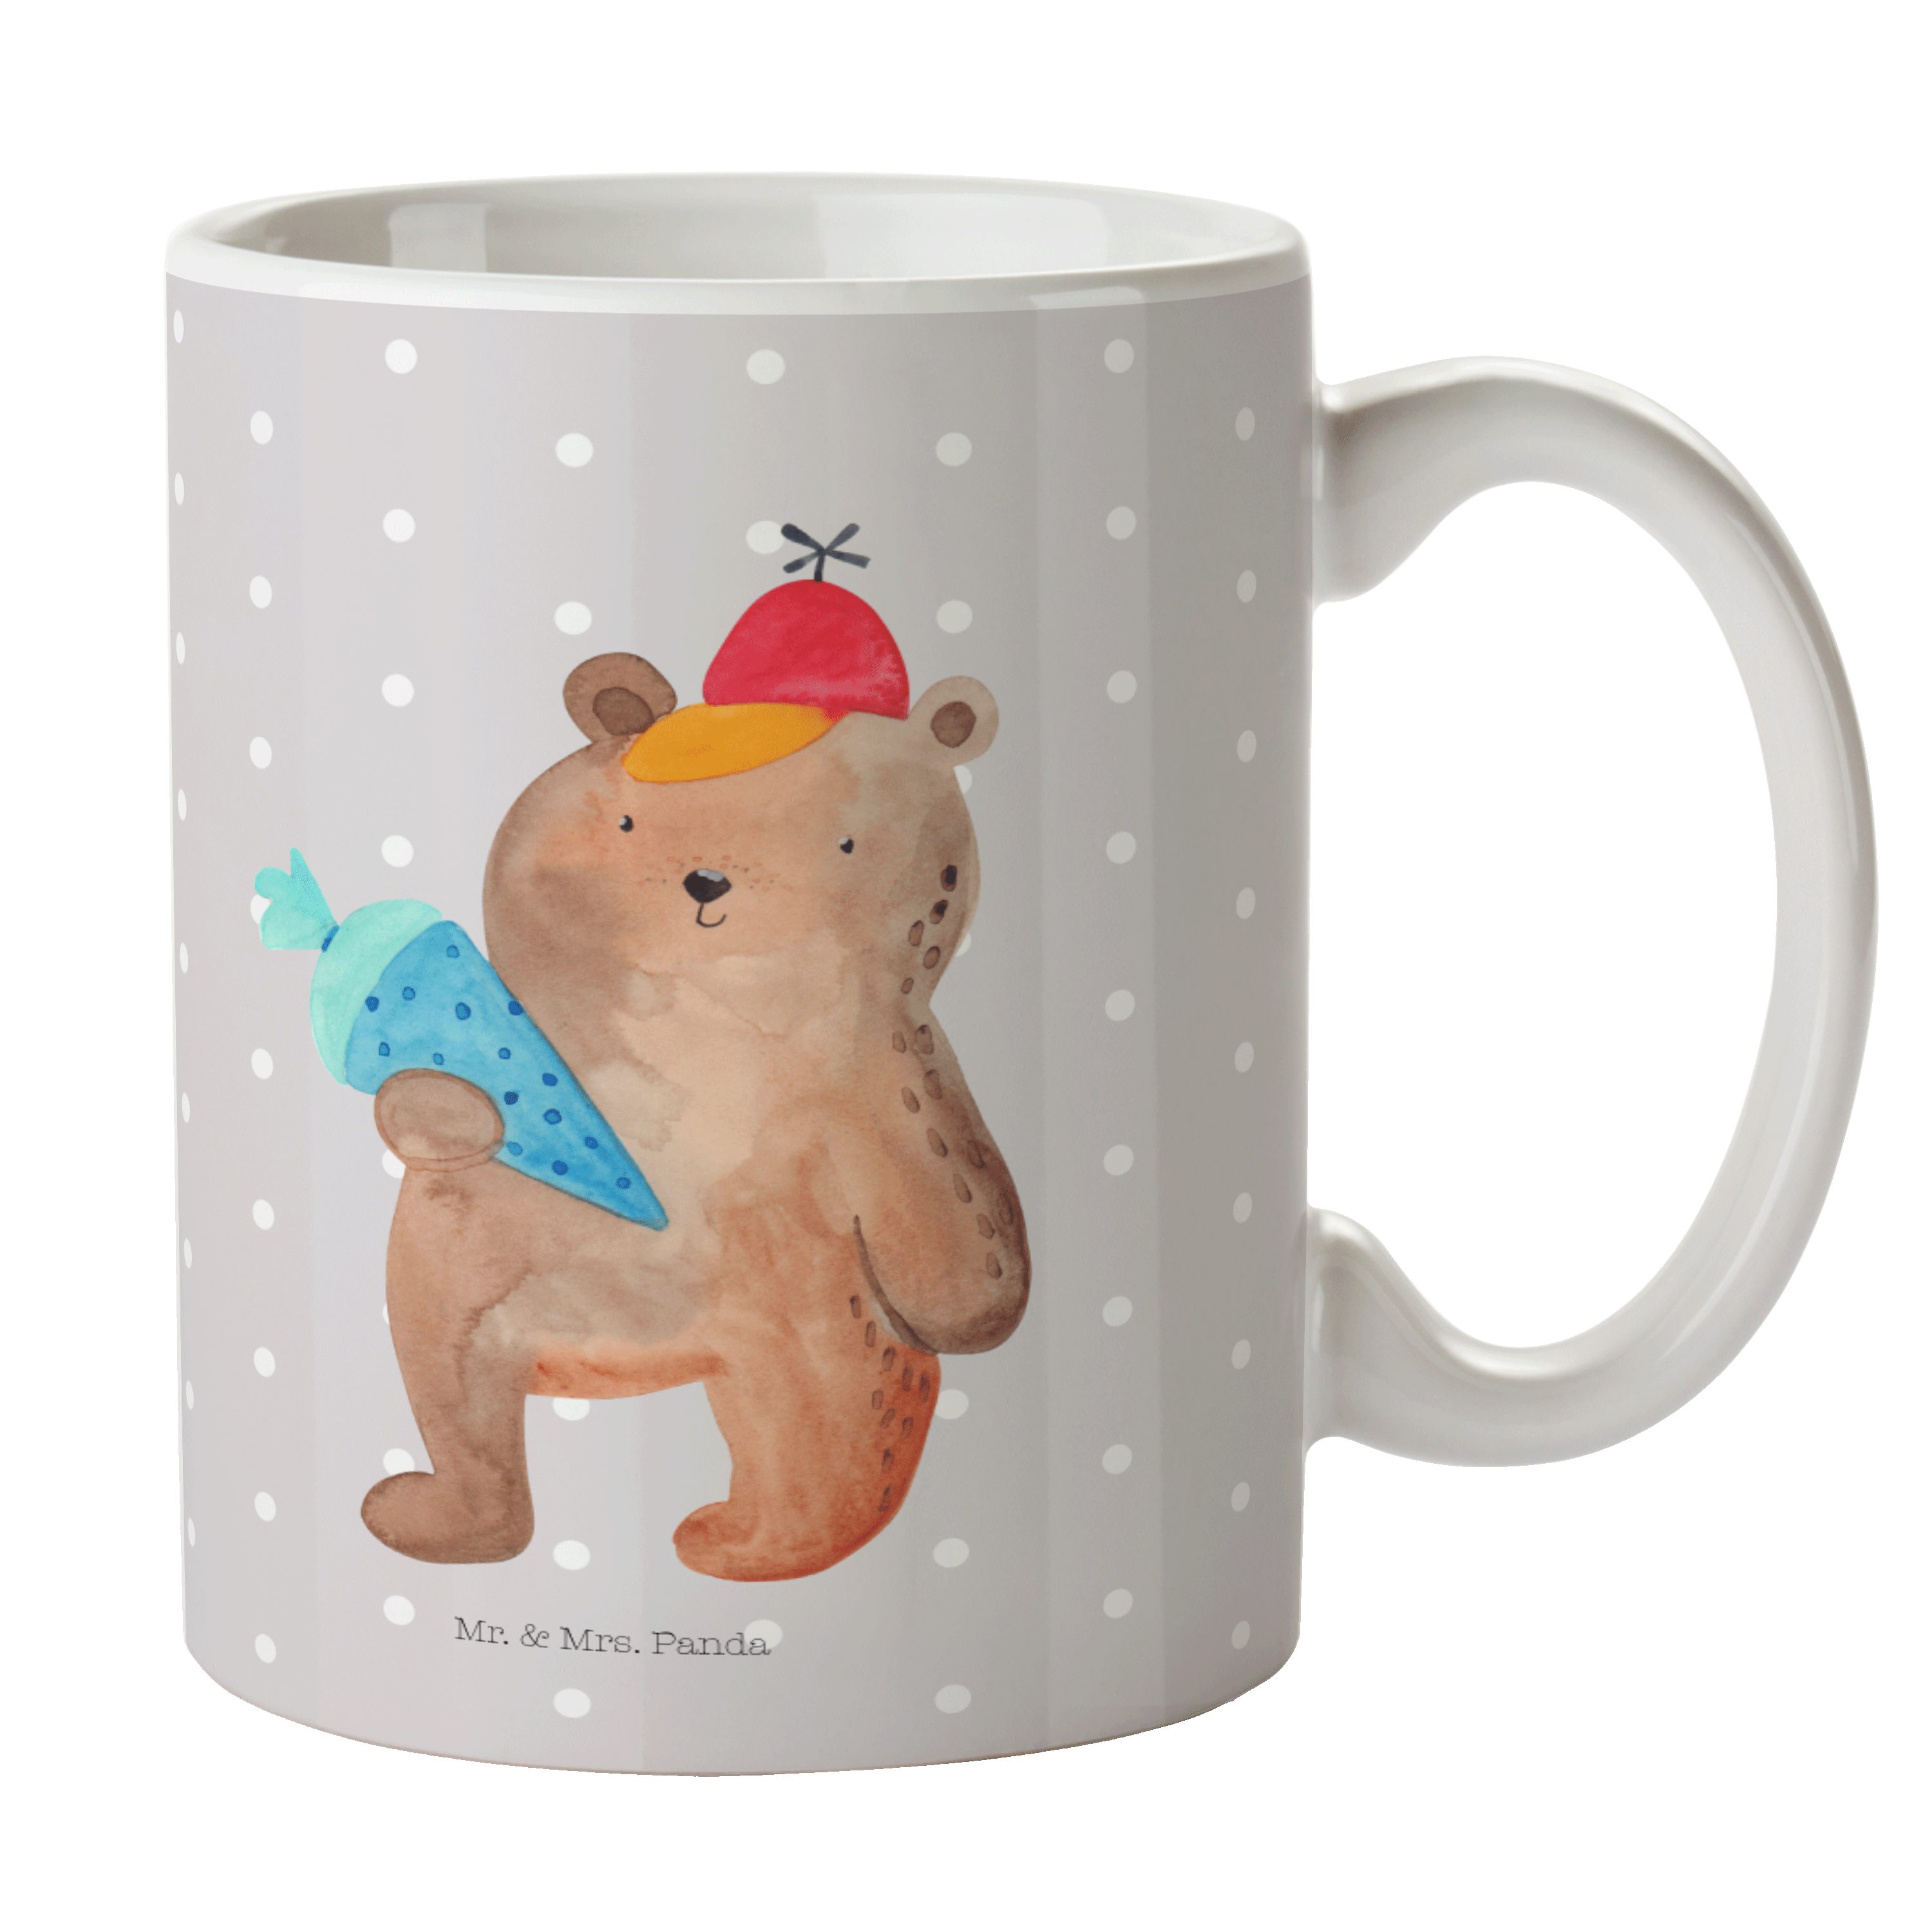 Mr. & Mrs. Panda Tasse Bär mit Schultüte - Grau Pastell - Geschenk, Tasse Motive, Teddy, Kaf, Keramik